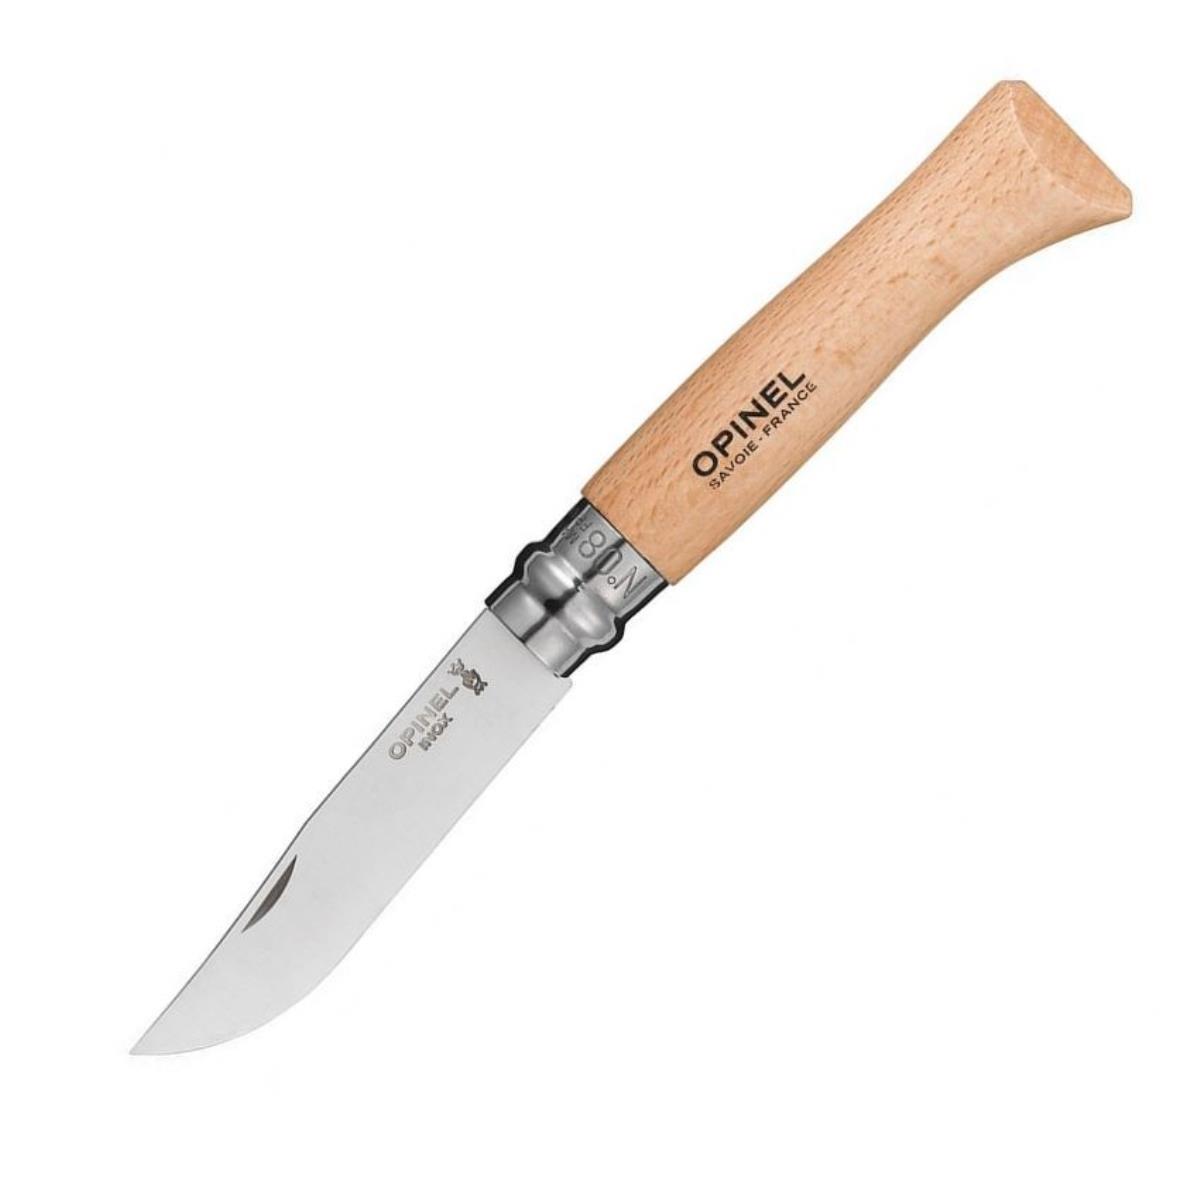 Нож №8 VRI Tradition Inox (нерж.сталь, рукоять бук, длина клинка 8,5 см) 1230805 OPINEL нож бабочка балисонг вервольф сталь 440c рукоять g10